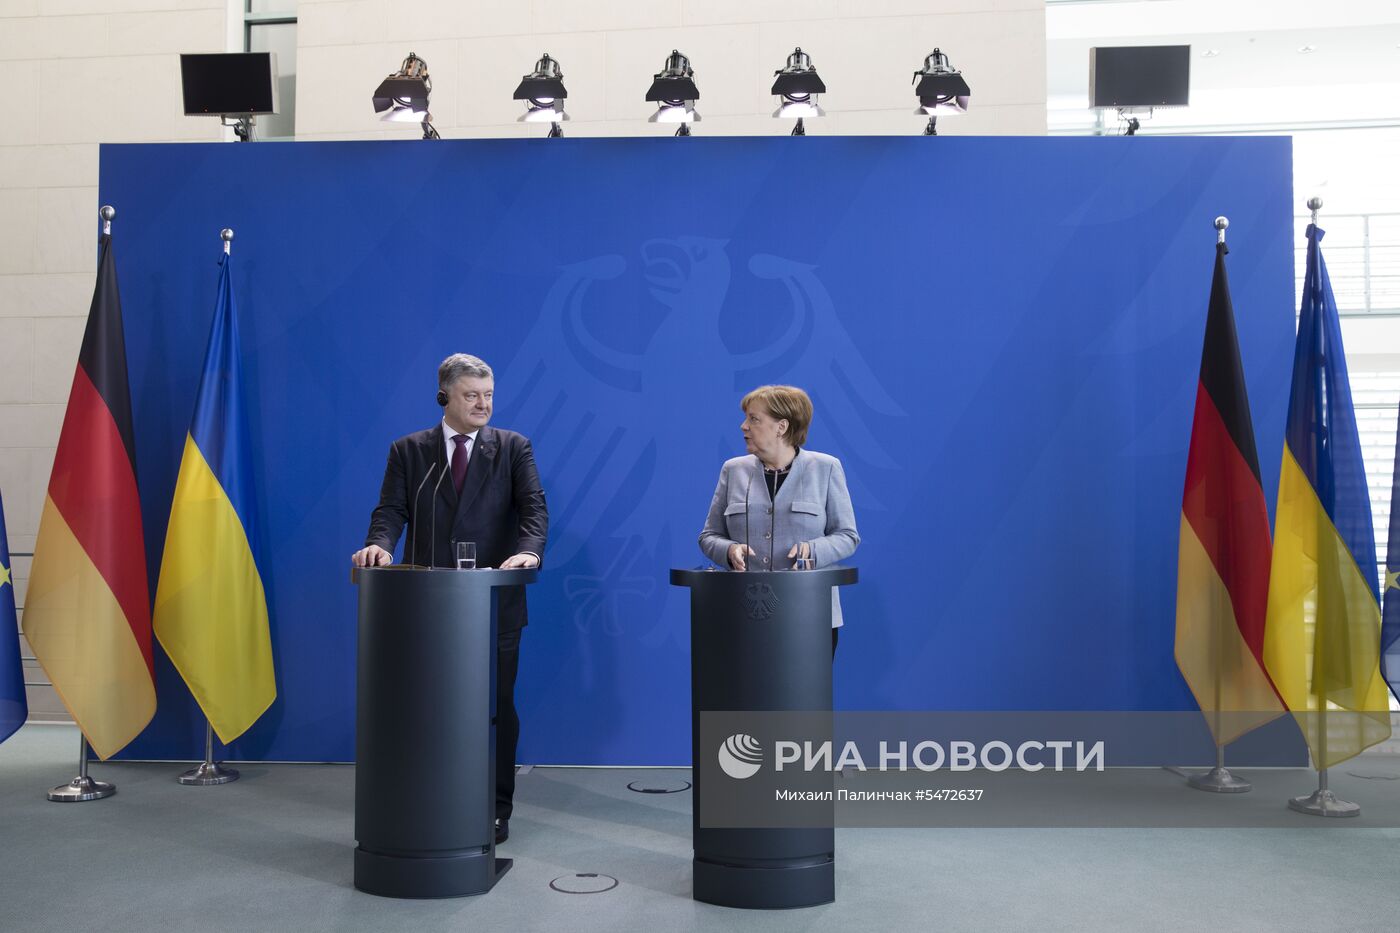  Визит президента Украины П. Порошенко в Германию